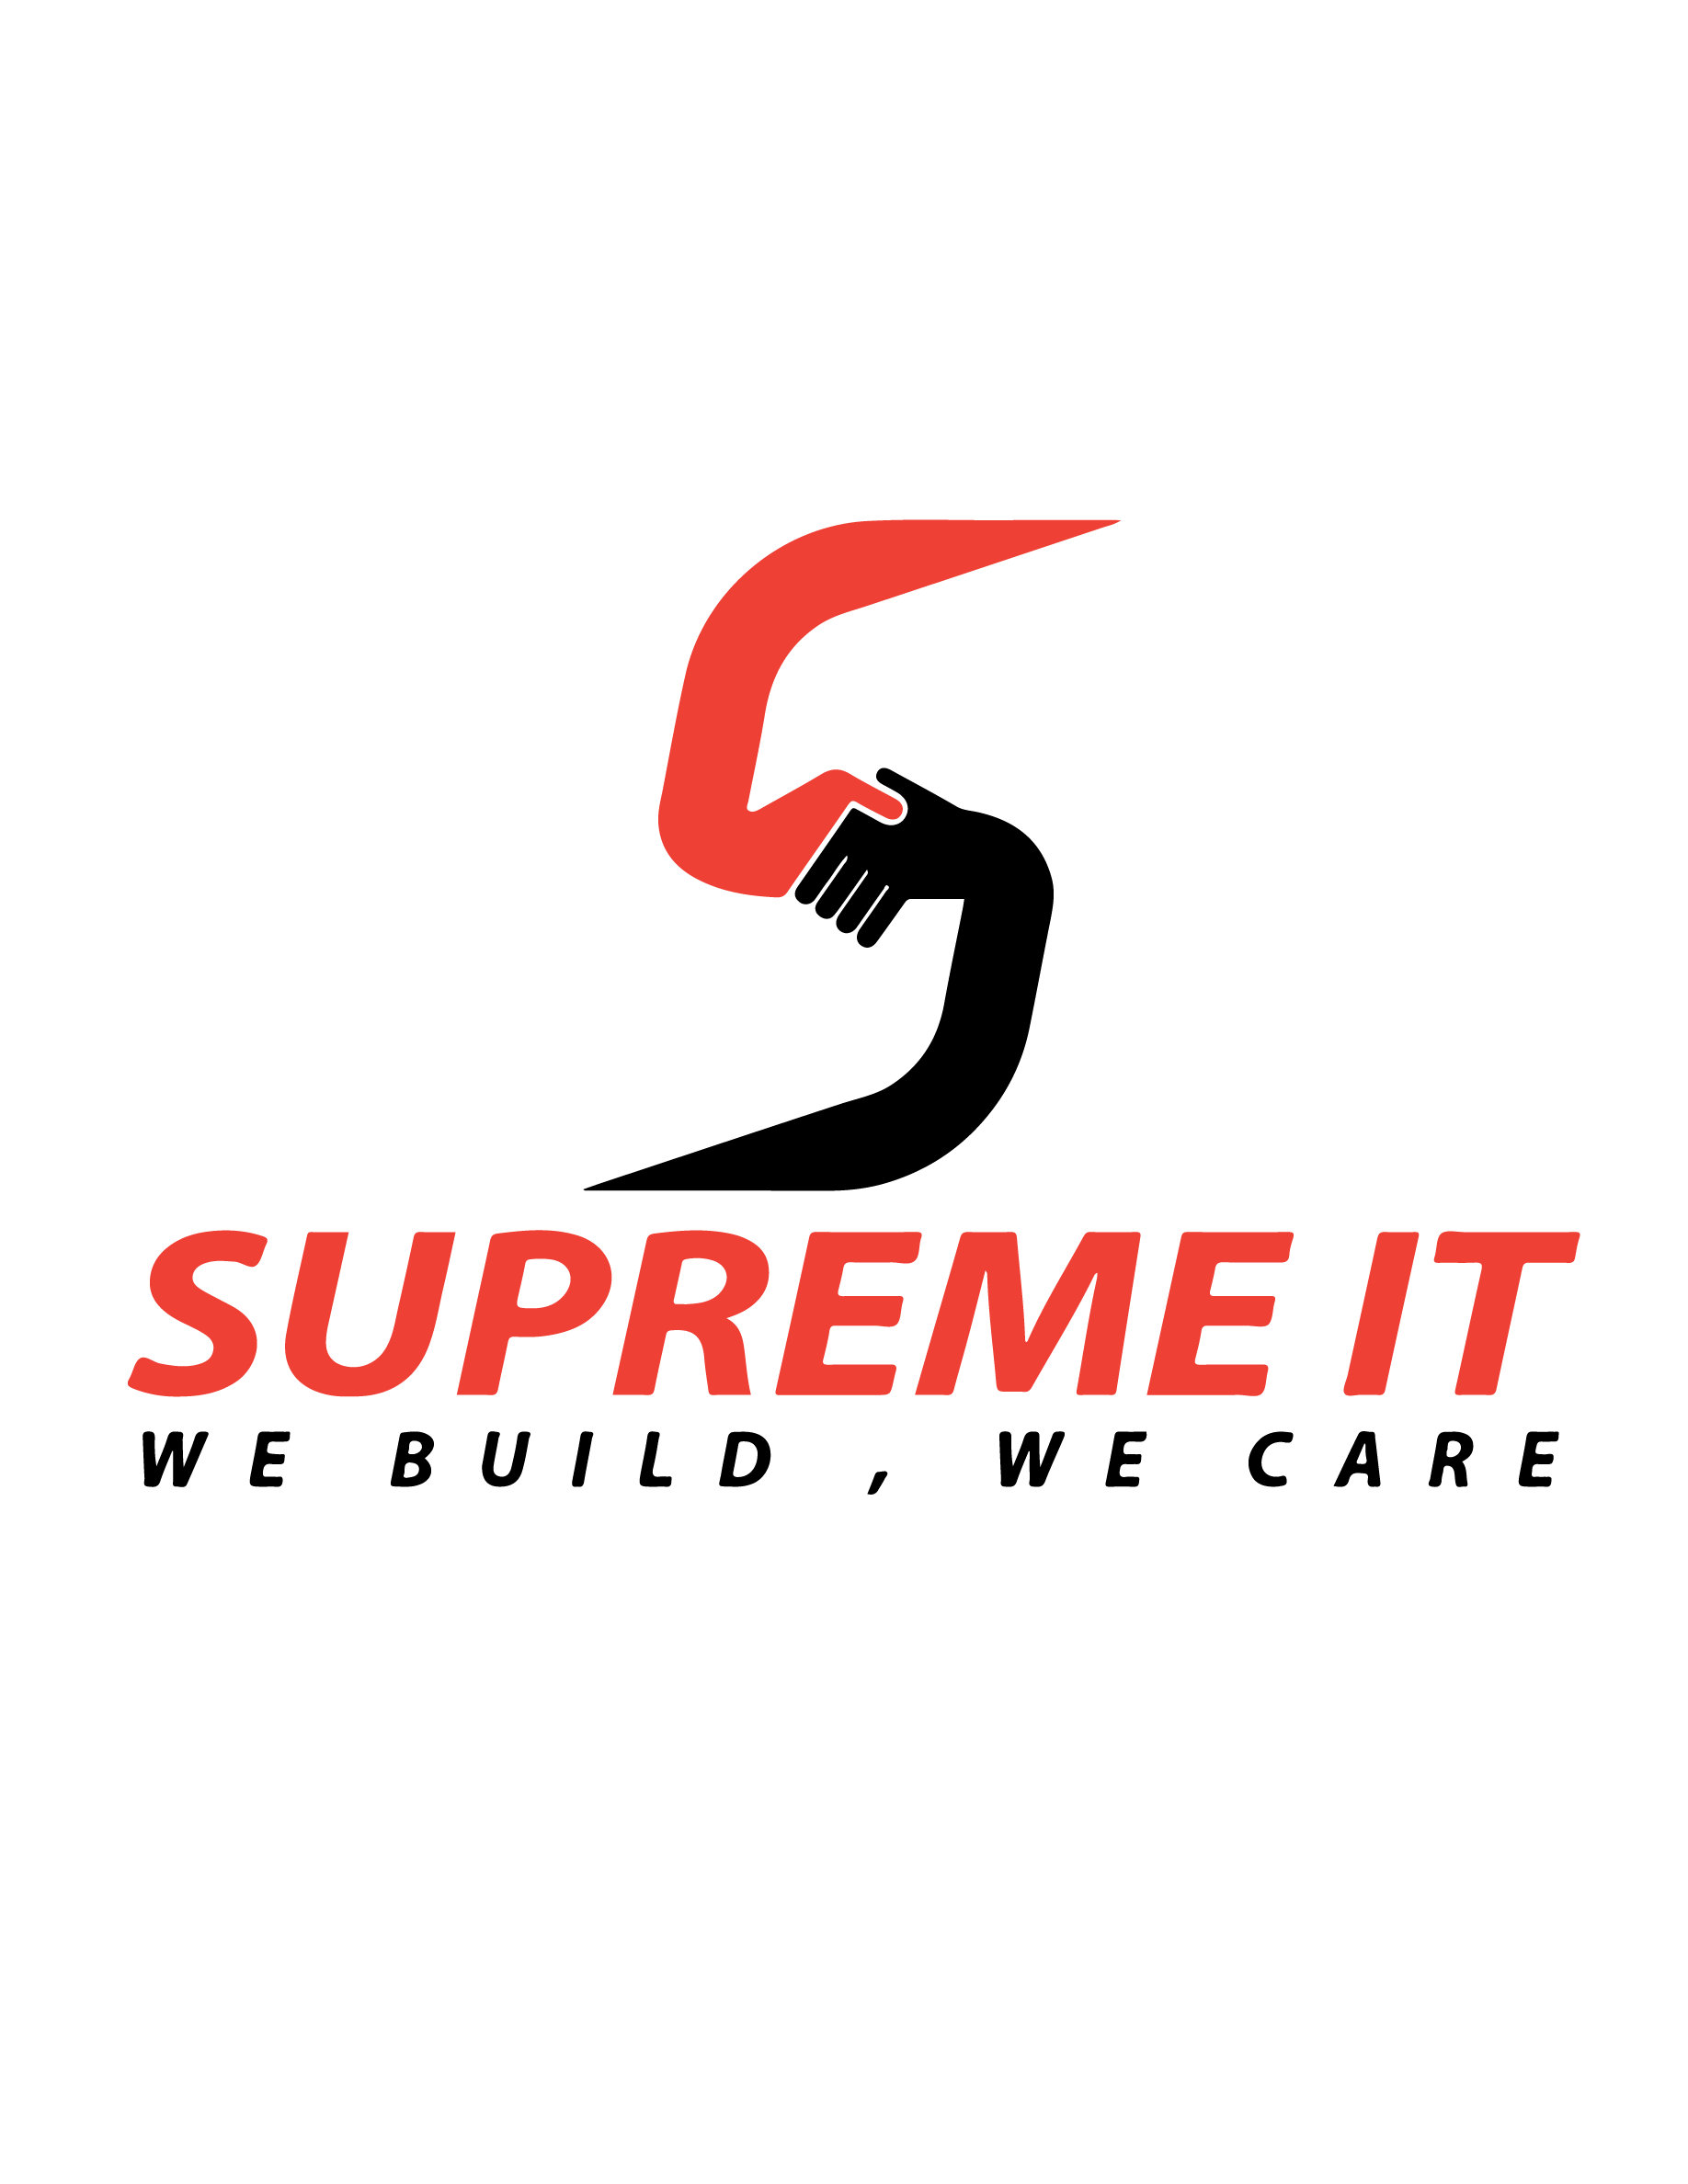 Supreme IT-logo